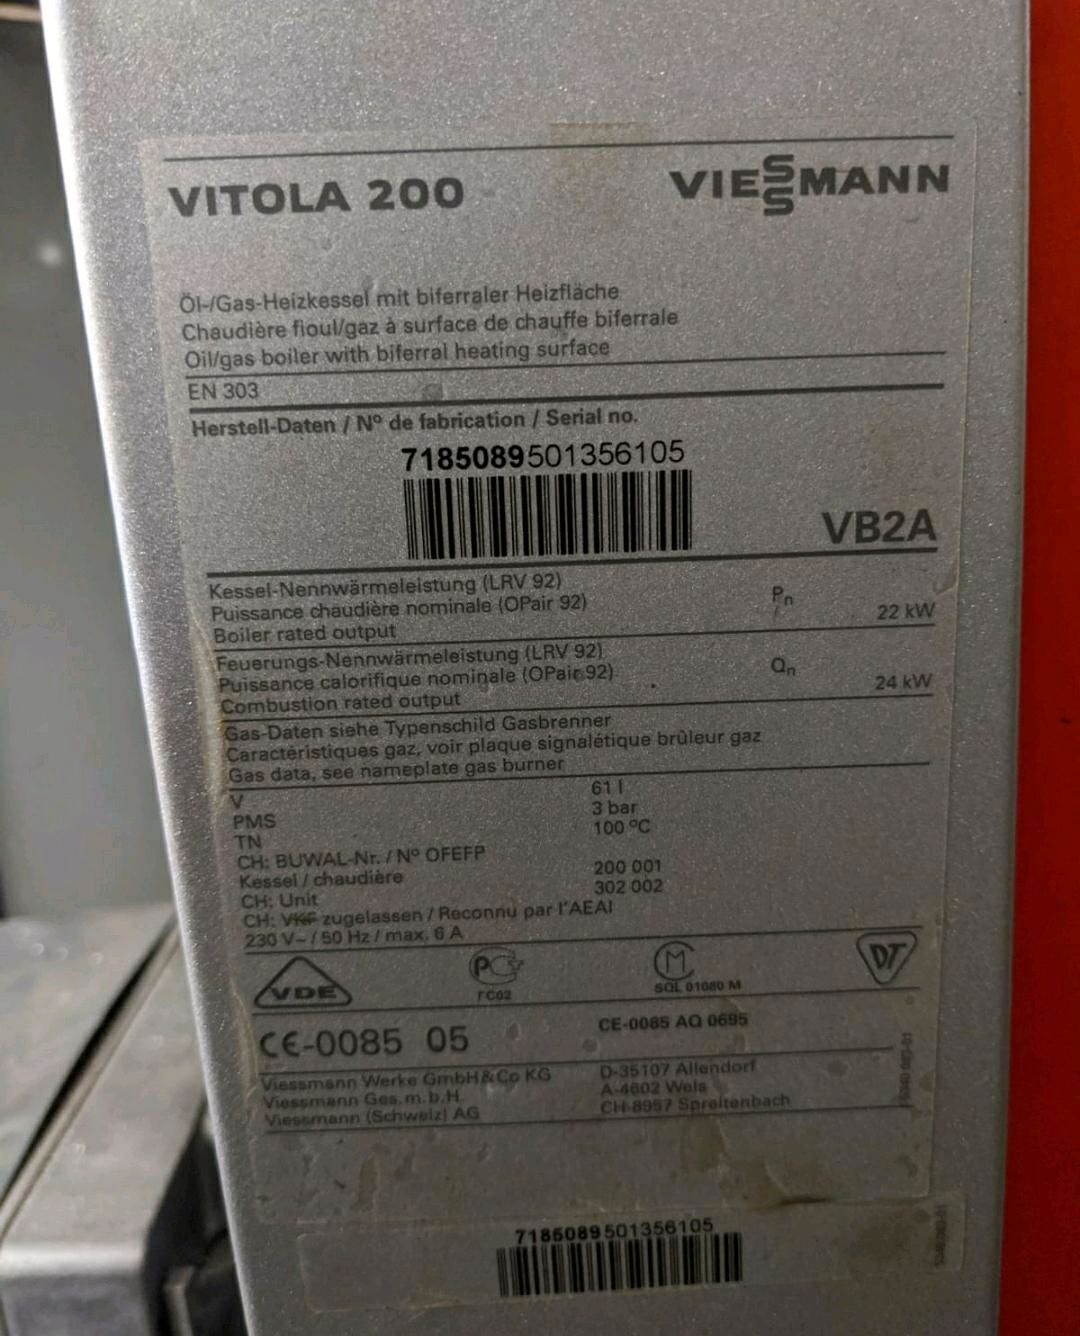 Vitola 200 VB2A.jpg